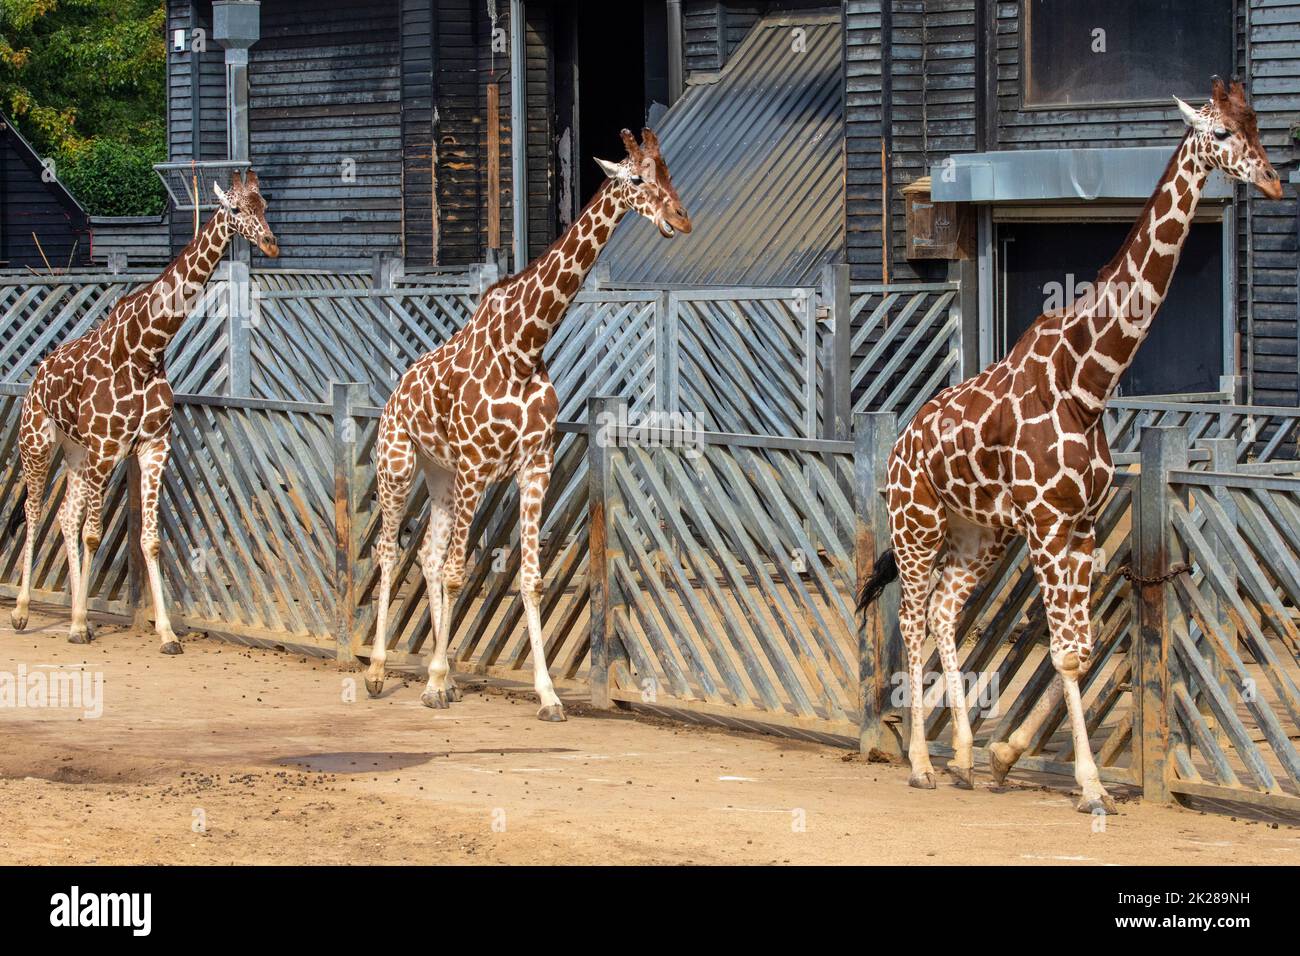 Trois girafes marchant dans une enceinte. Banque D'Images